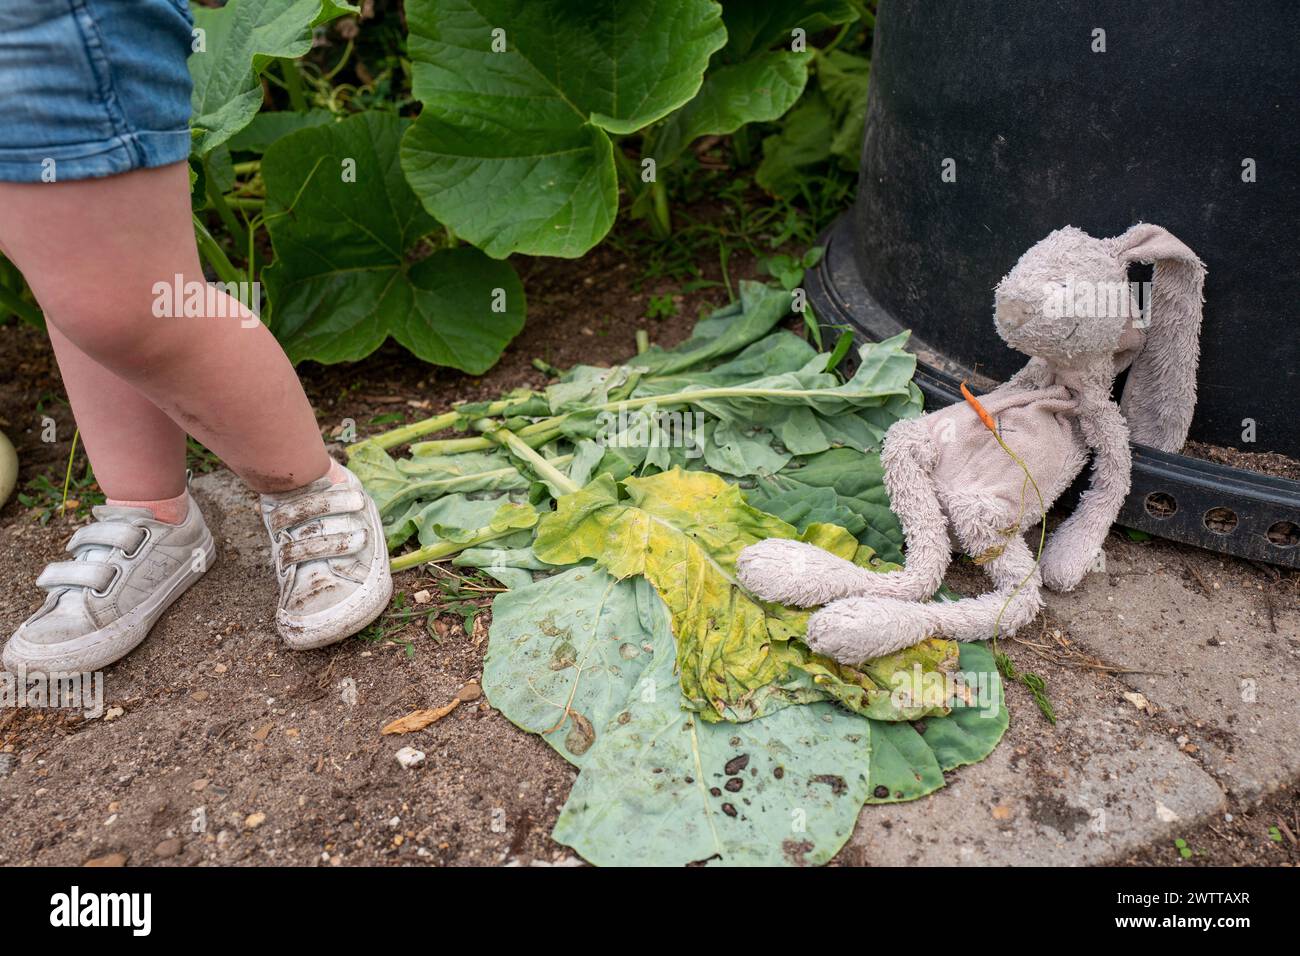 Il giocattolo dimenticato di un bambino si trova abbandonato accanto a una pianta di rabarbaro Foto Stock